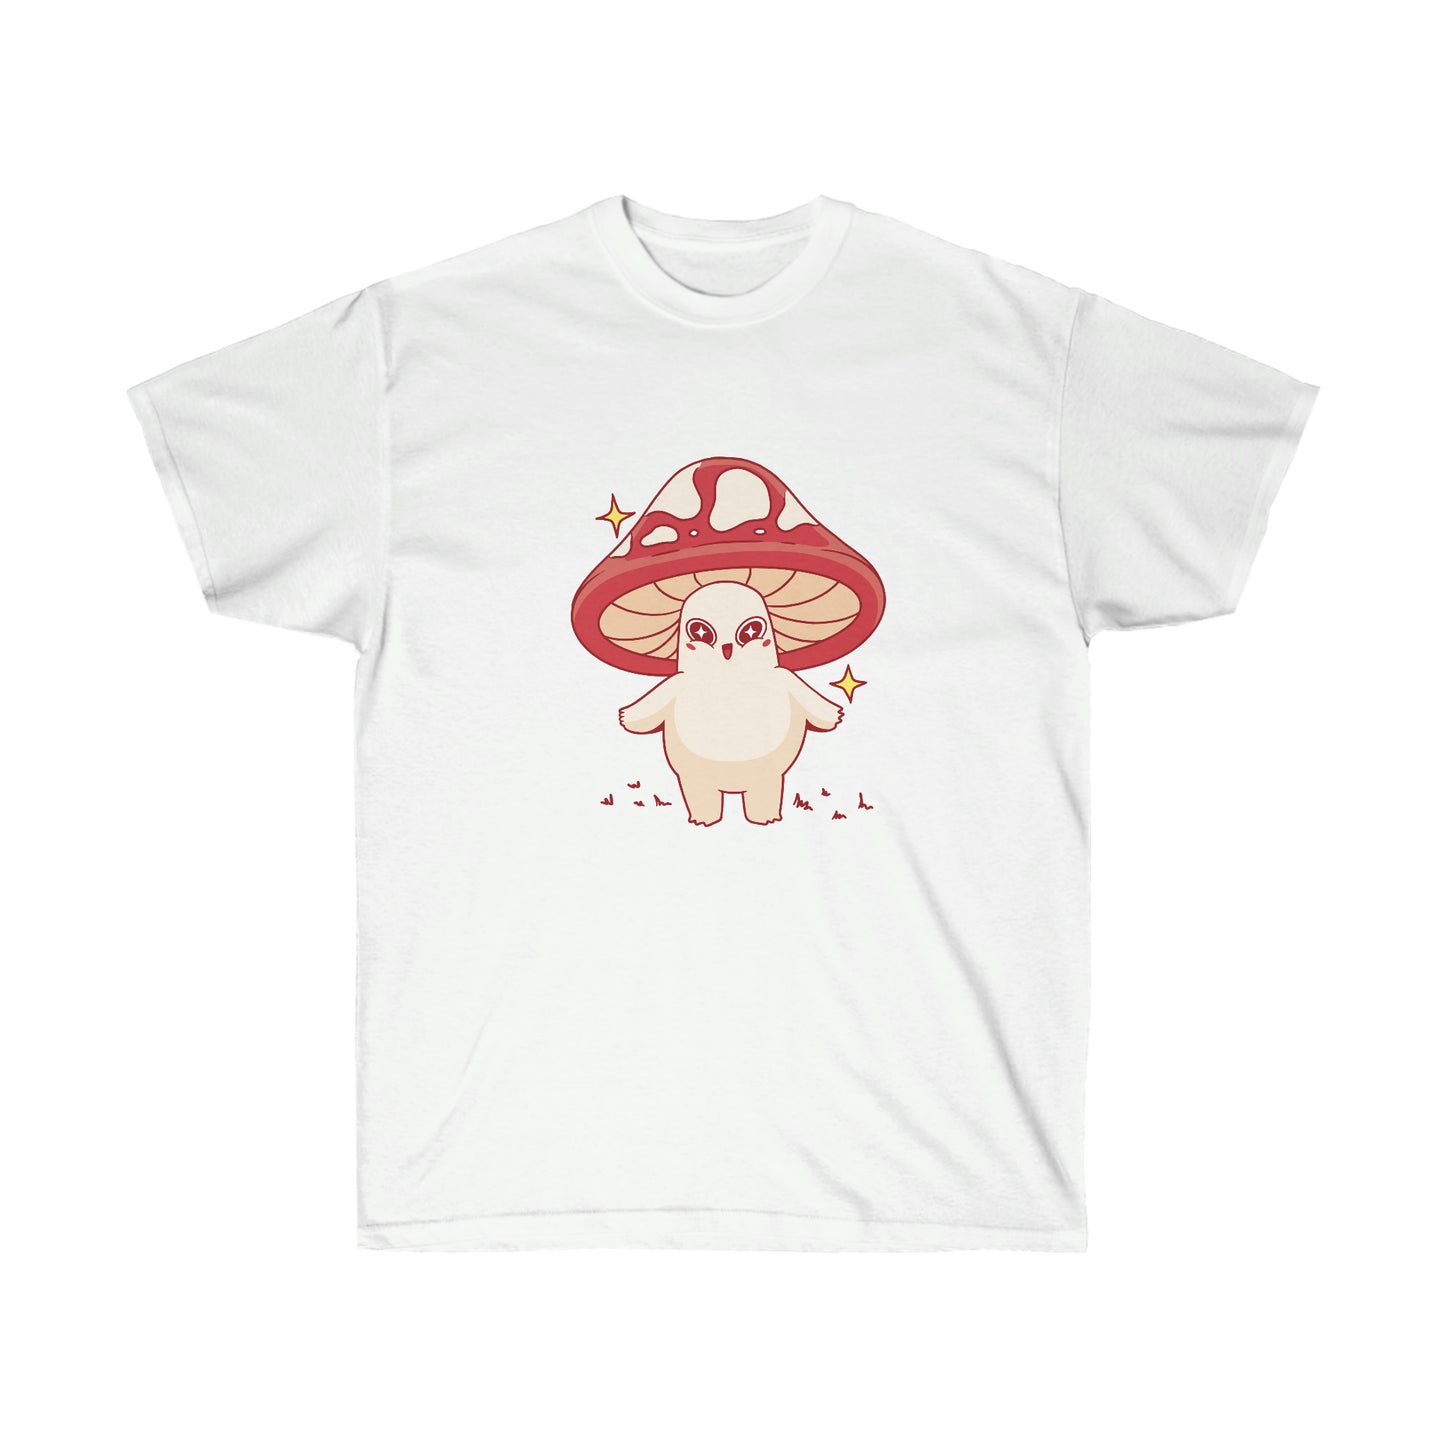 Kawaii Sweatshirt, Kawaii Clothing, Kawaii Clothes, Yami Kawaii Aesthetic, Pastel Kawaii Cute Mushroom Sweatshirt T-Shirt